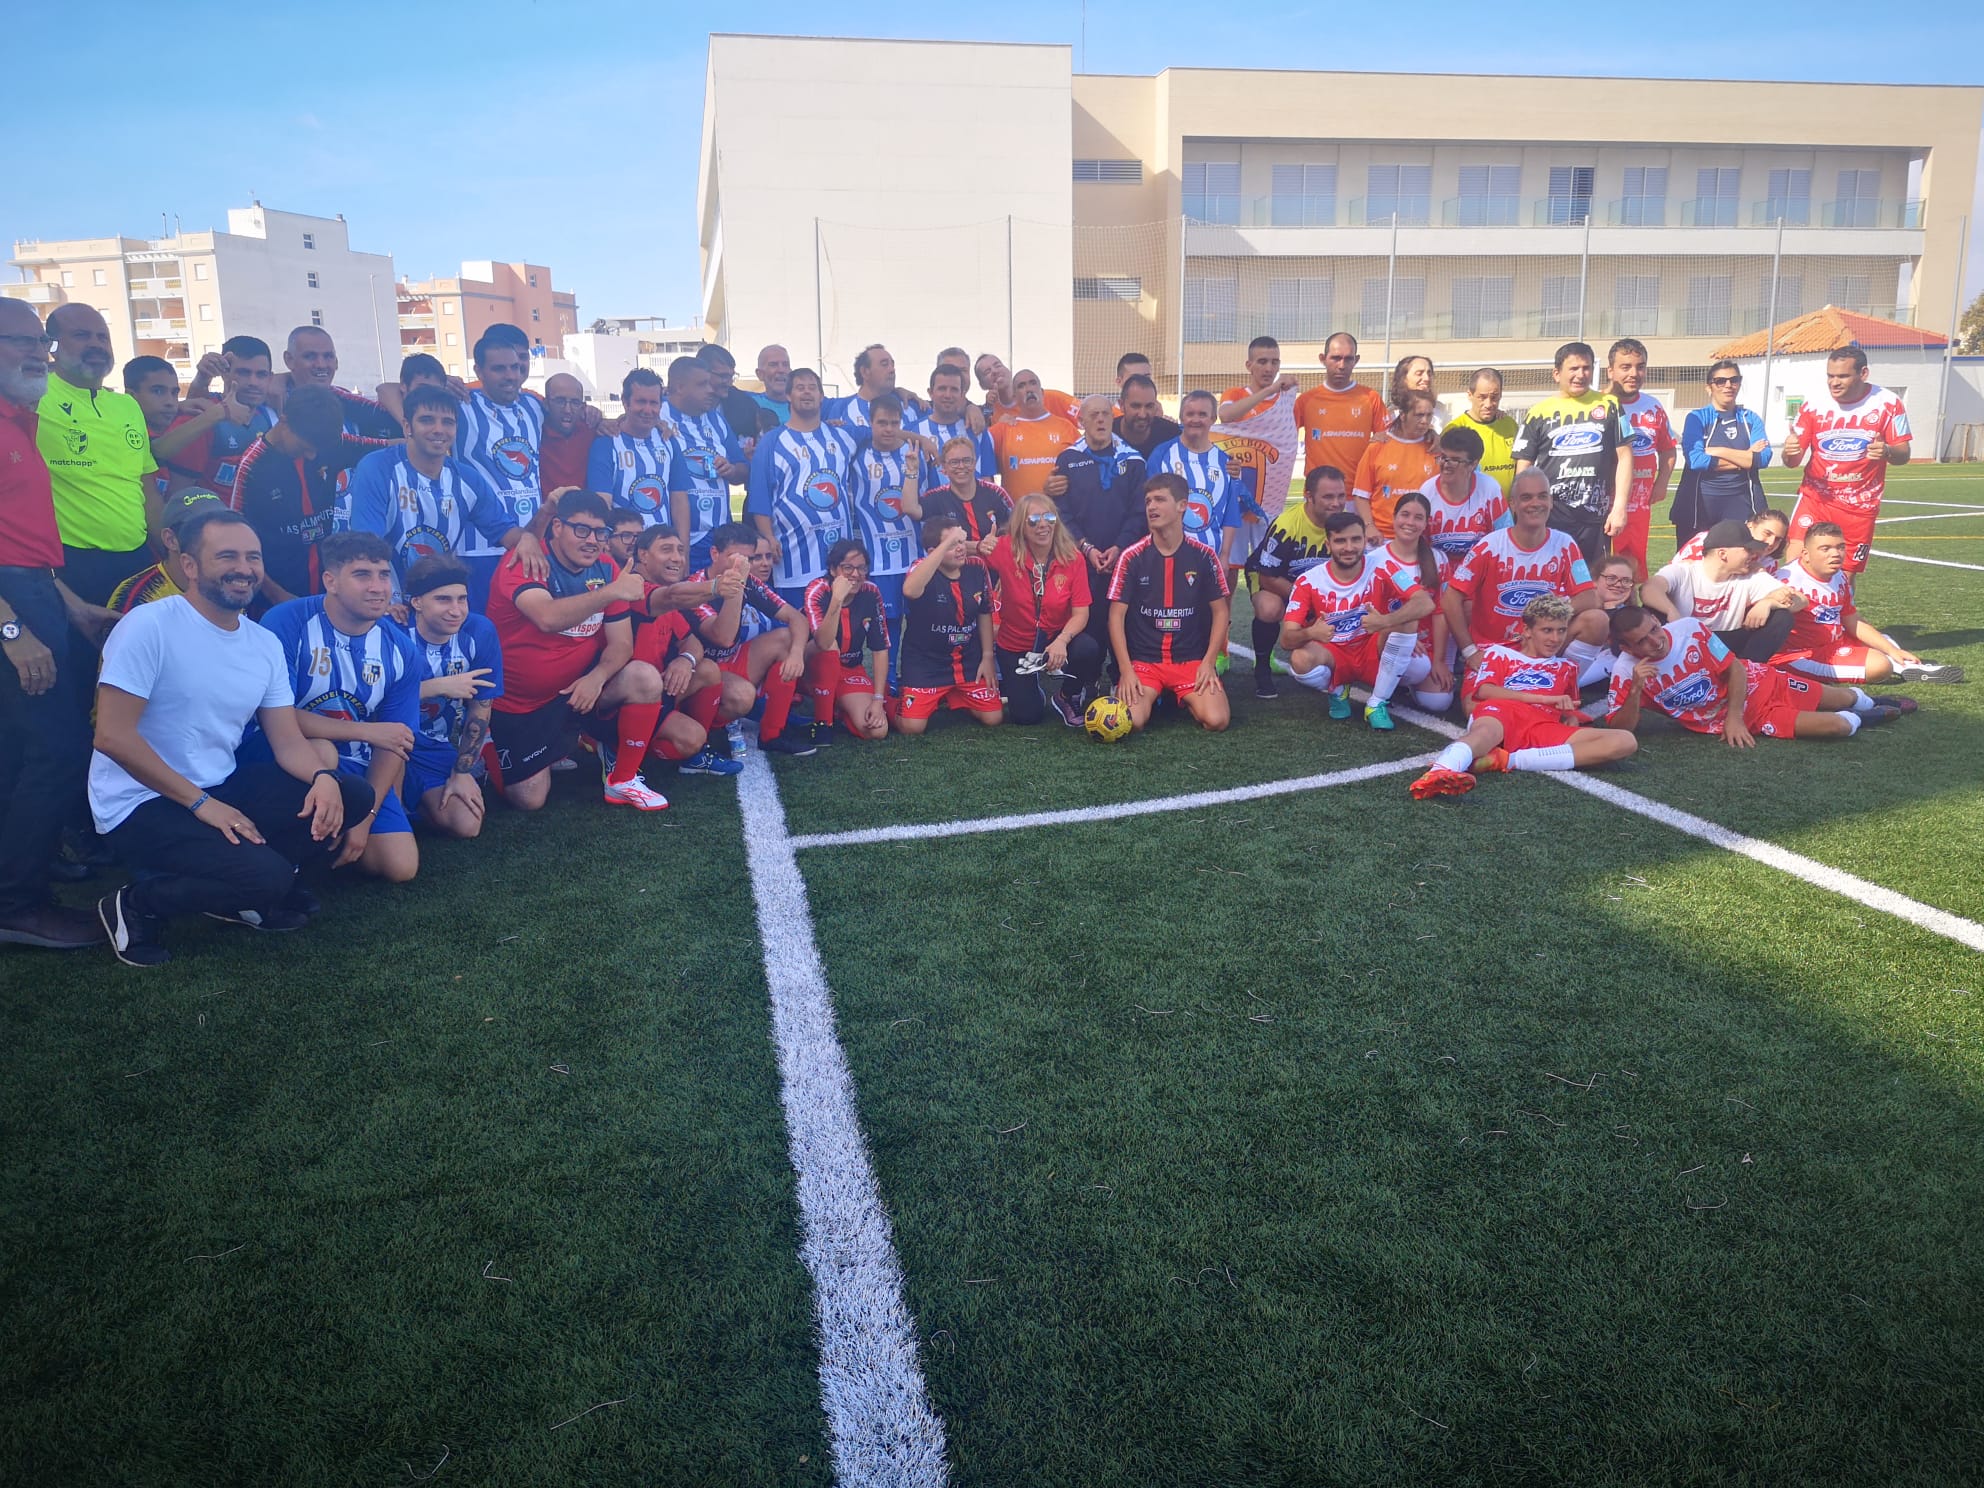 Isla Cristina acoge la primera concentración de la Liga Inclusiva Andaluza